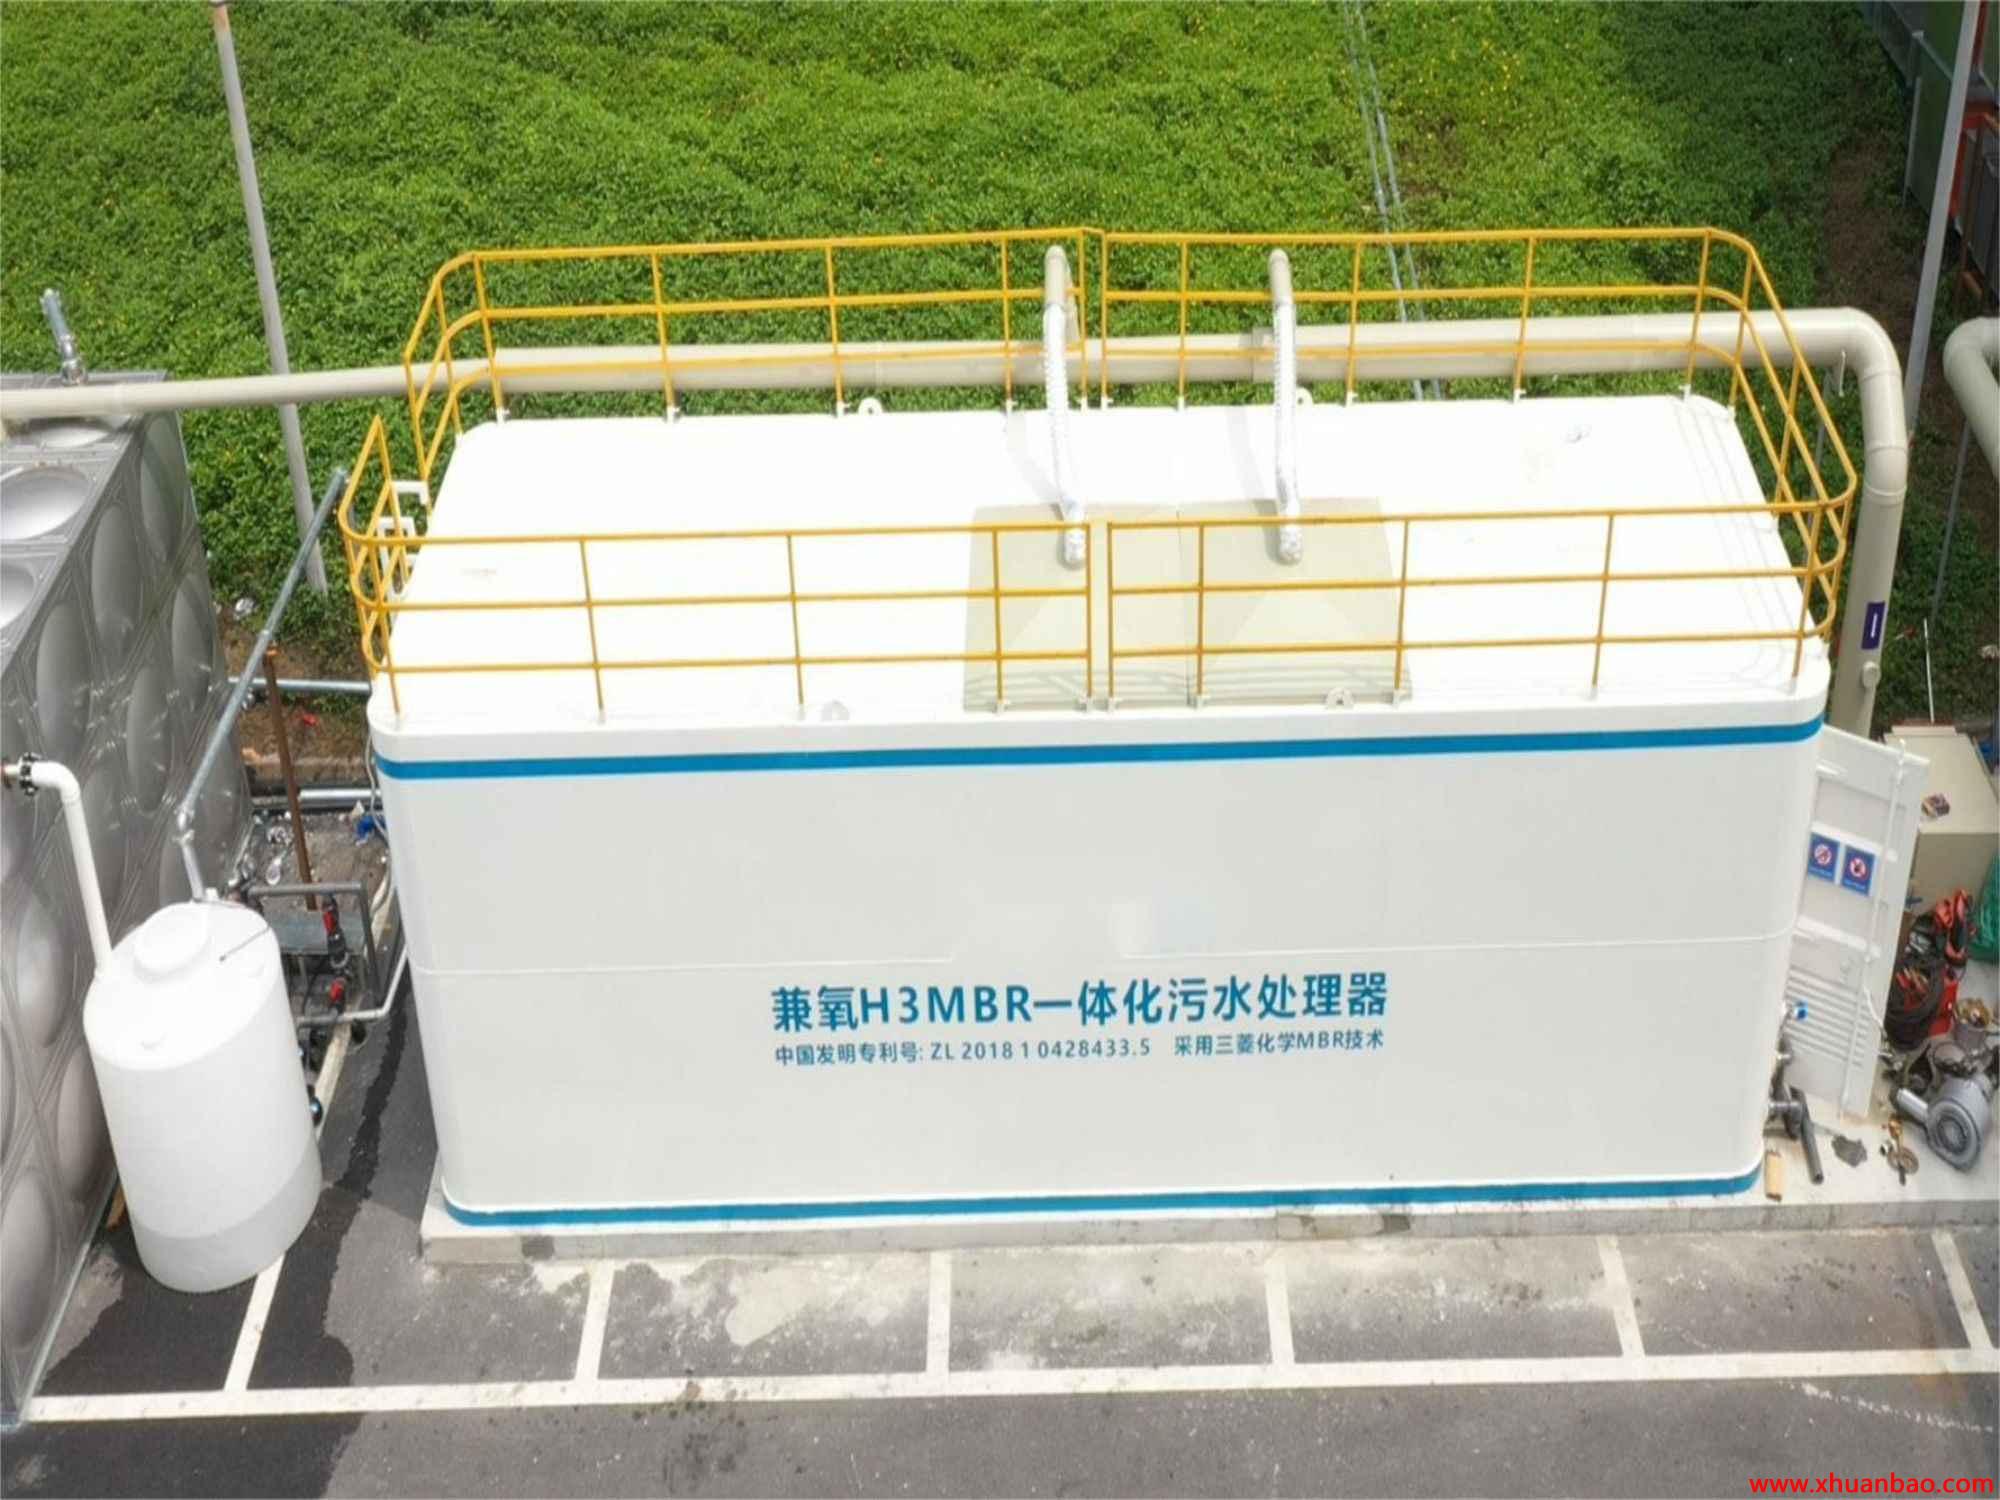 云南文山州方舱医院污水处理工程 mbr一体化设备 7天完成安装